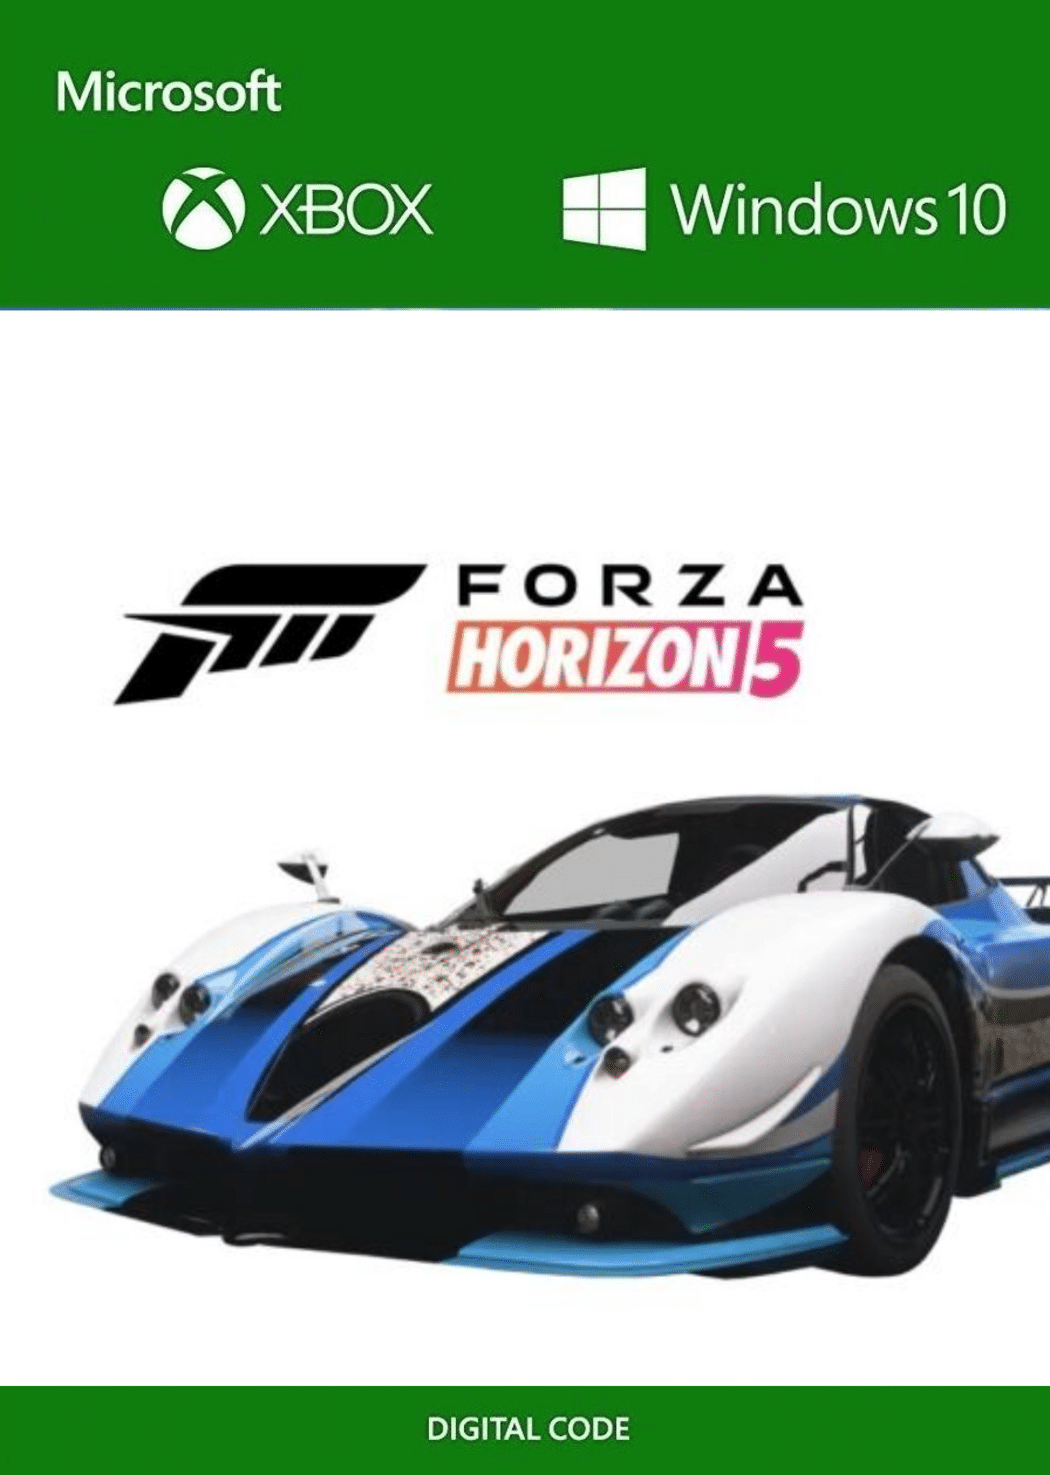 Forza Horizon 5 2009 Pagani Zonda Cinque Roadster 'Oreo Edition